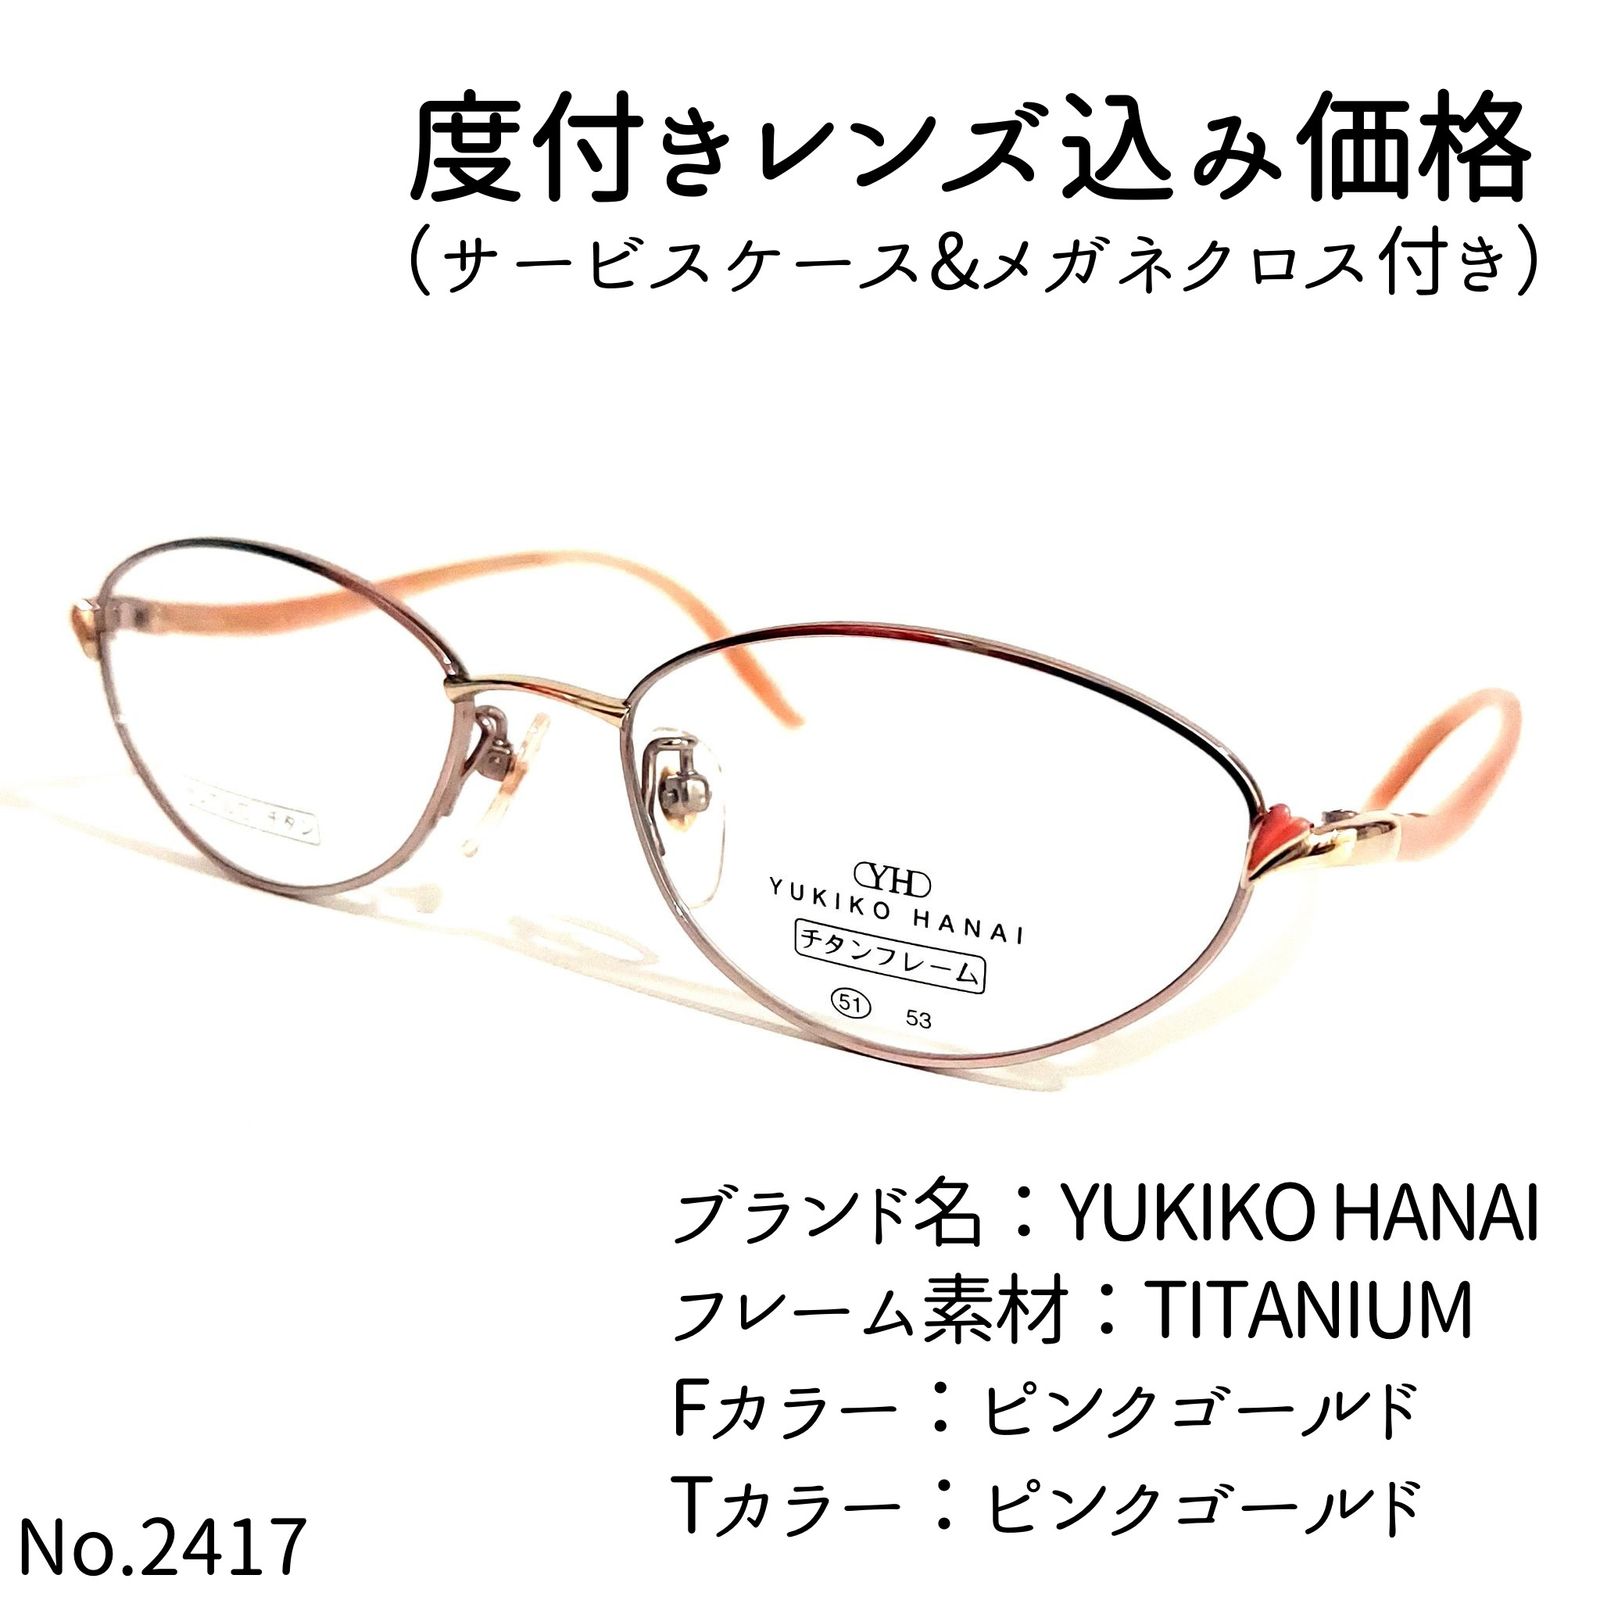 No.2417メガネ YUKIKO HANAI【度数入り込み価格】 | www